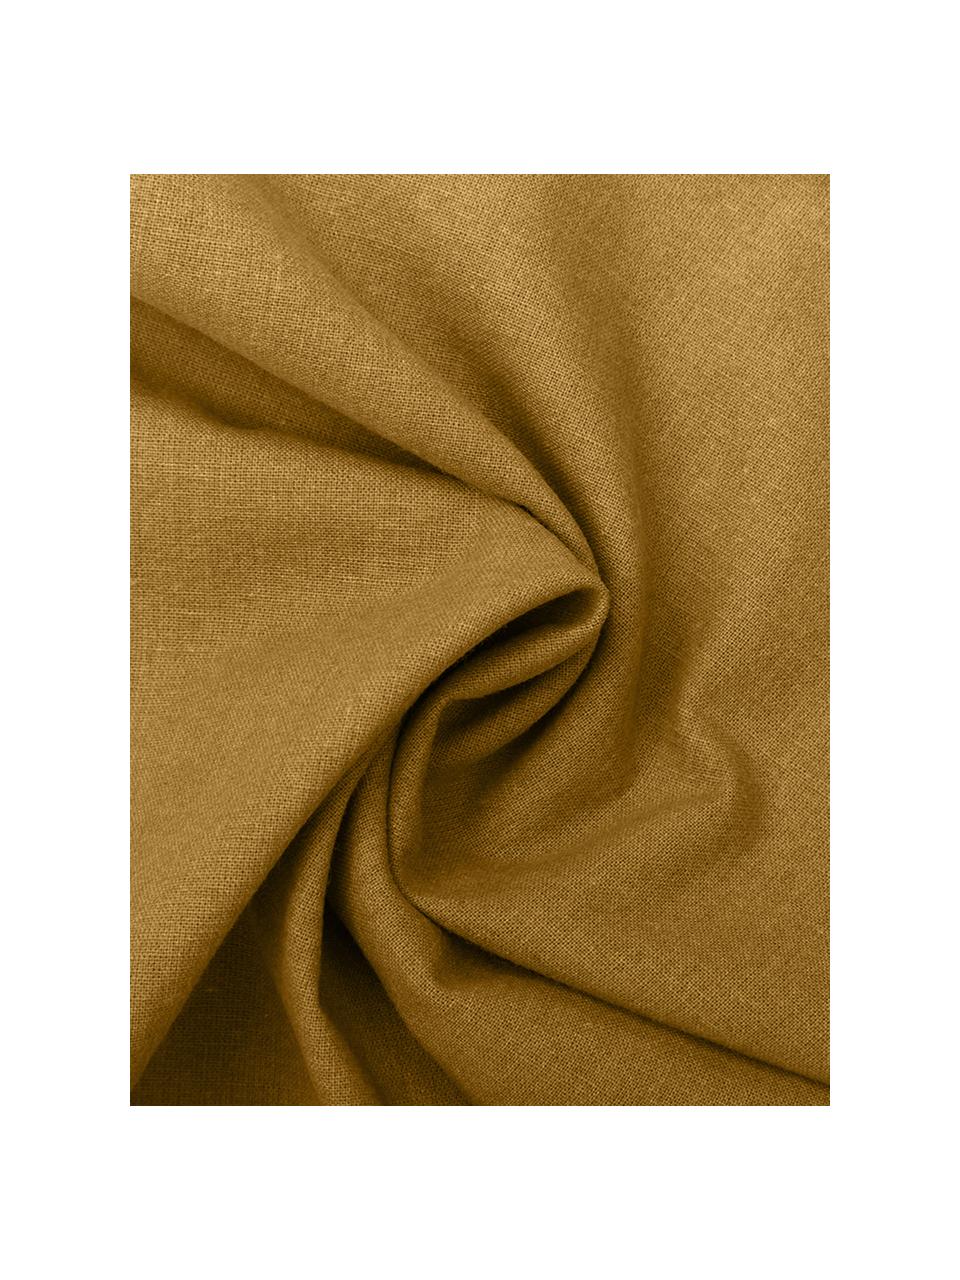 Gewaschene Baumwoll-Bettwäsche Arlene in Gelb, Webart: Renforcé Fadendichte 144 , Gelb, 200 x 200 cm + 2 Kissen 80 x 80 cm